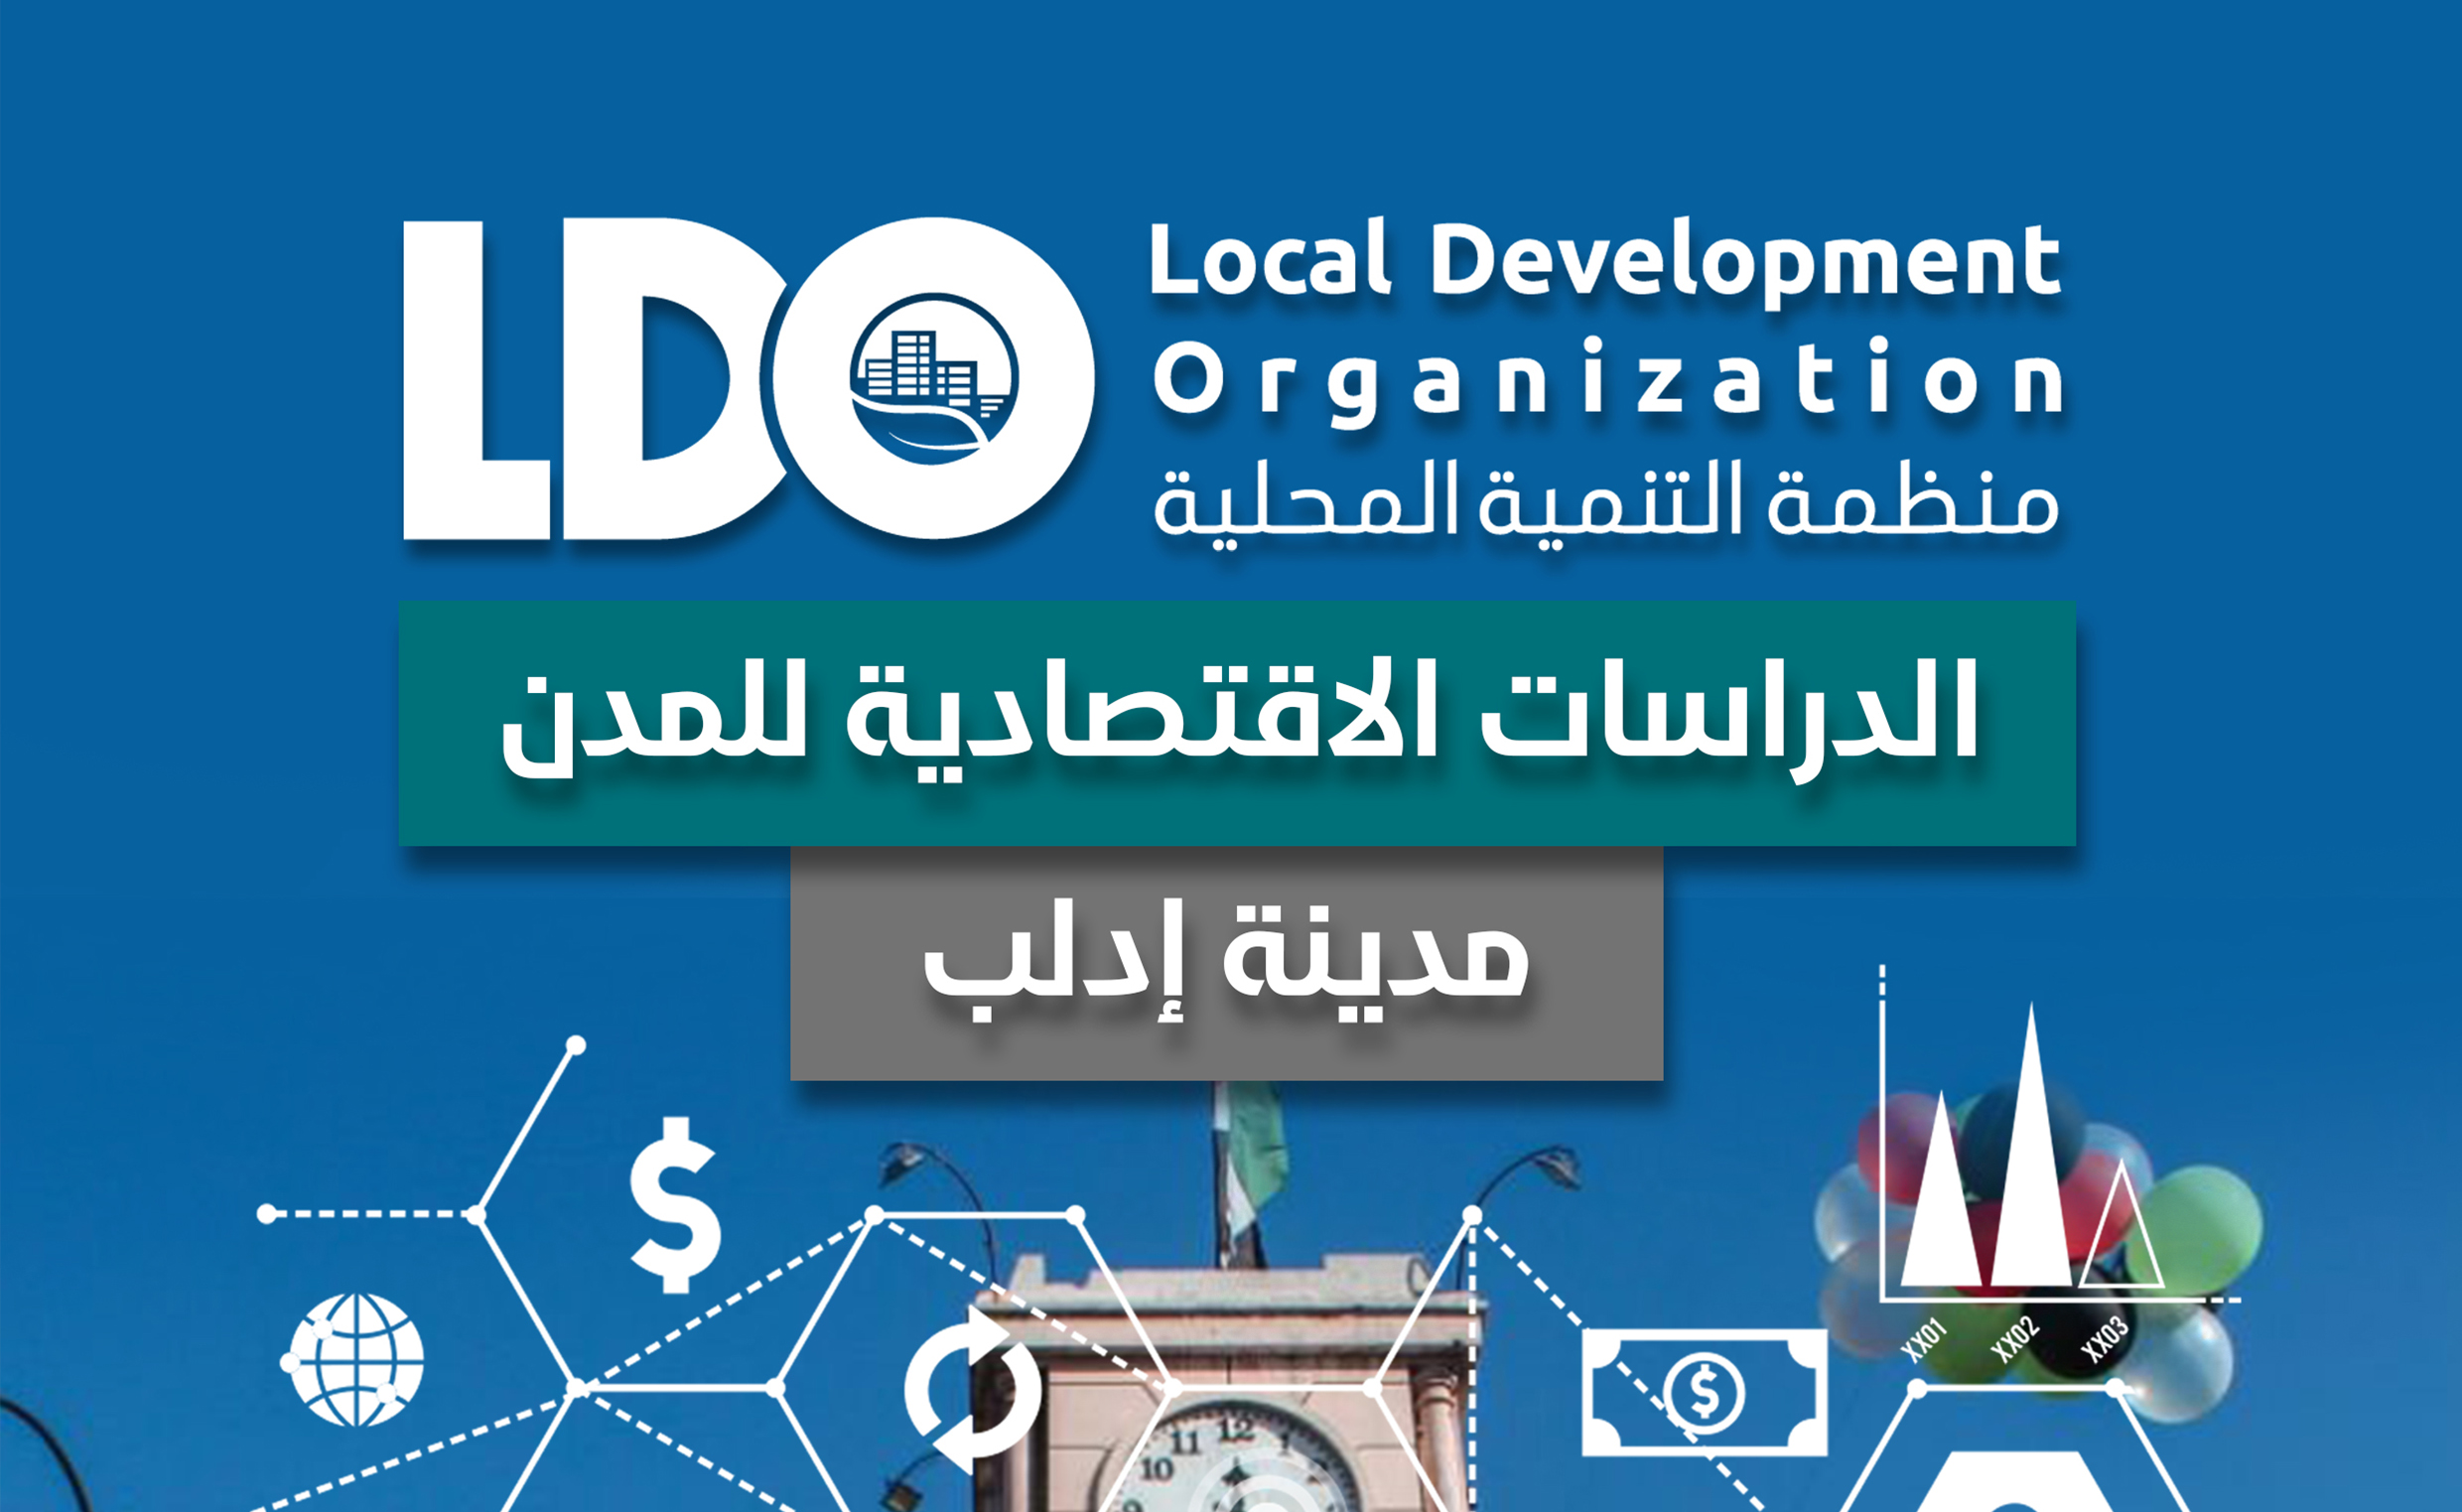 الدراسات الاقتصادية للمدن ” مدينة إدلب ”